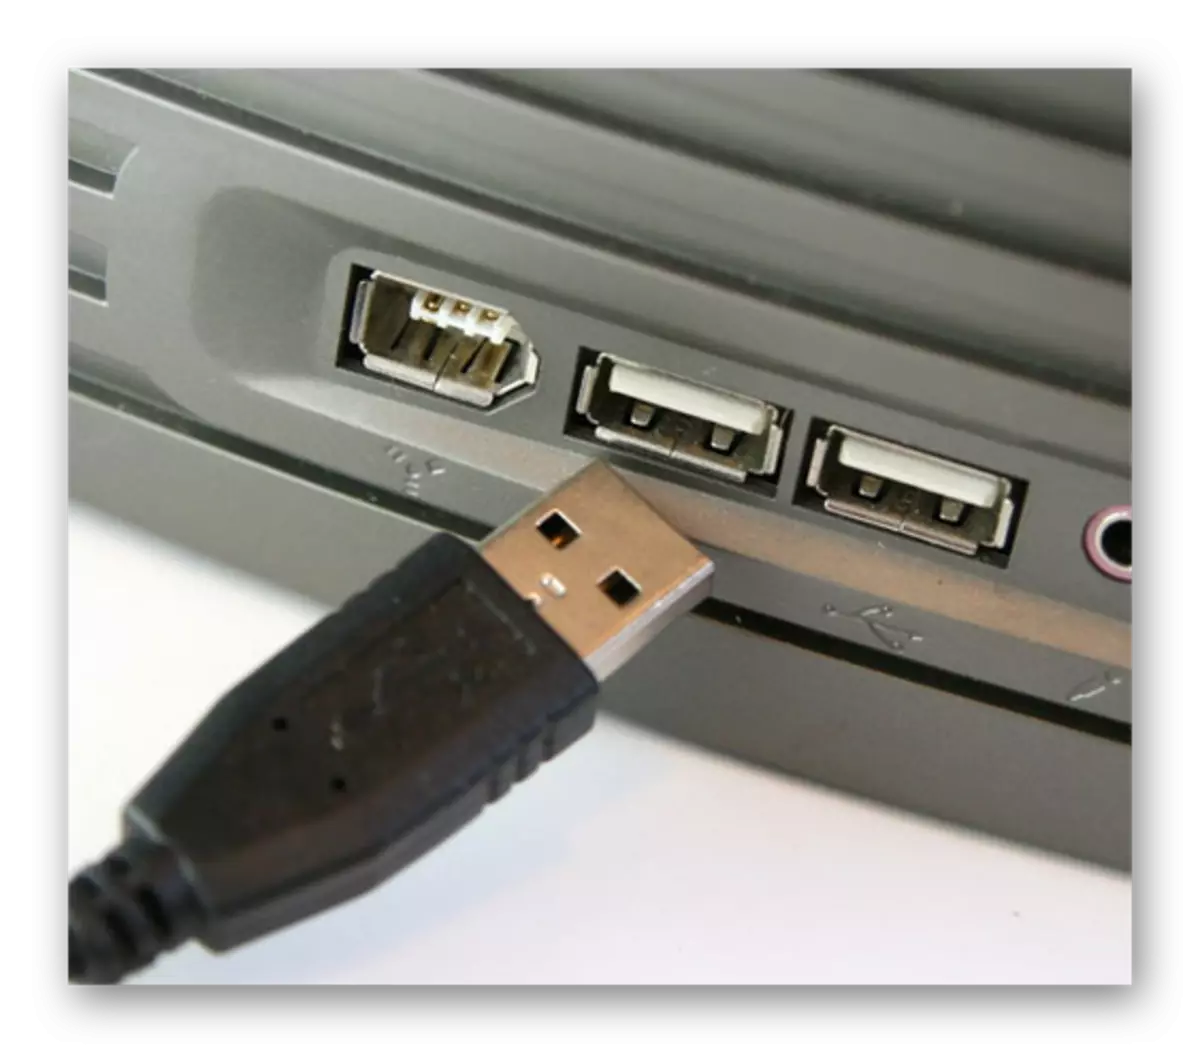 عملية توصيل كابل USB بموصل USB على جهاز كمبيوتر محمول